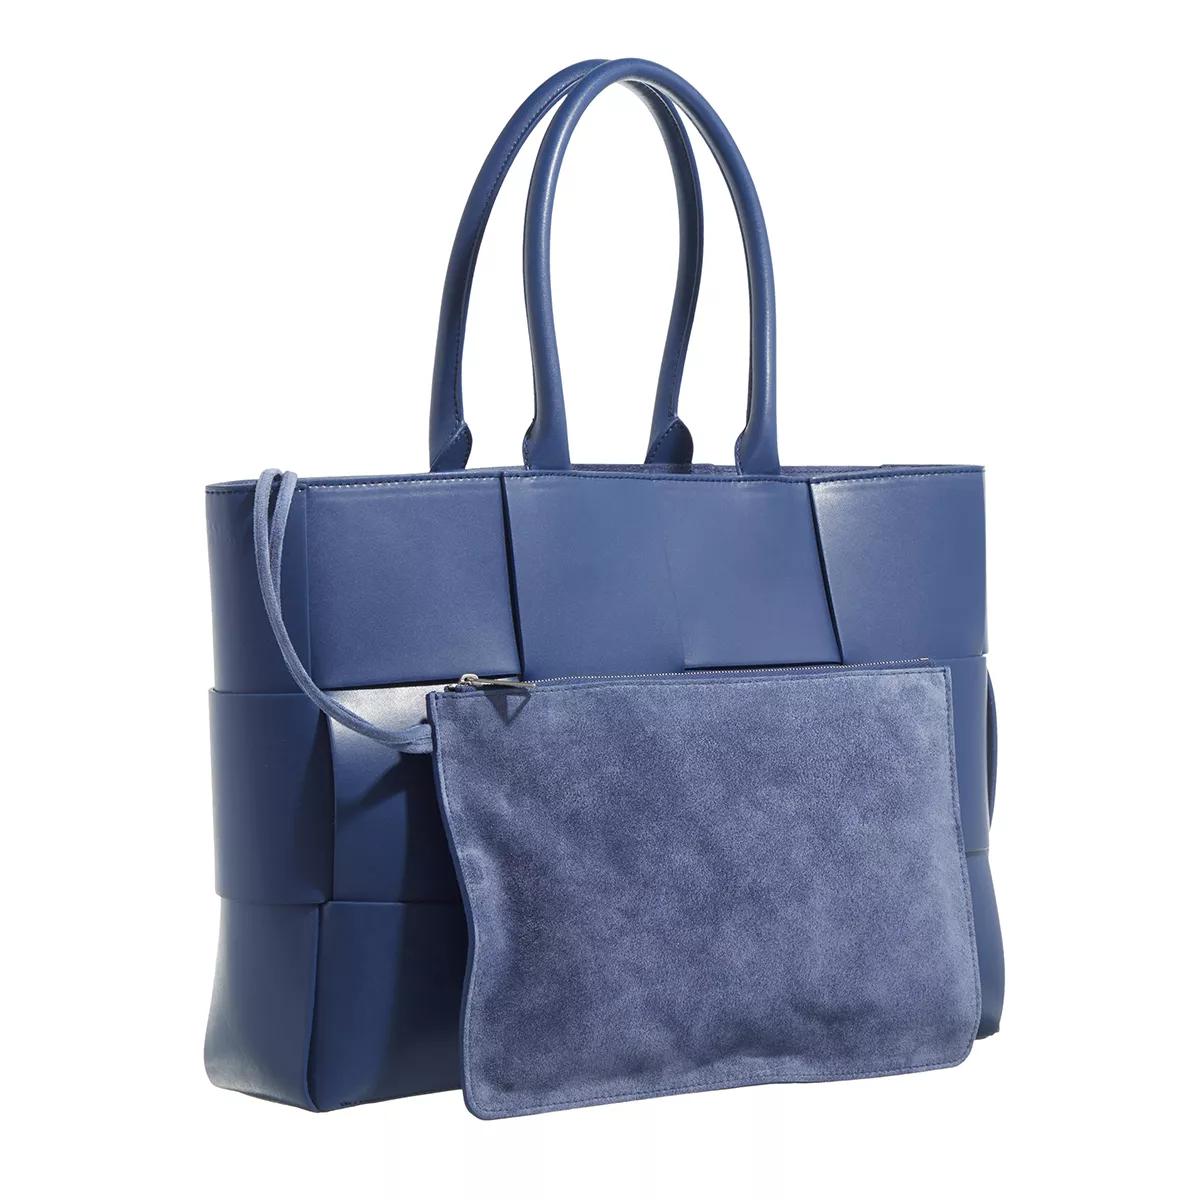 Bottega Veneta Shoppers Medium Arco Tote Bag in blauw